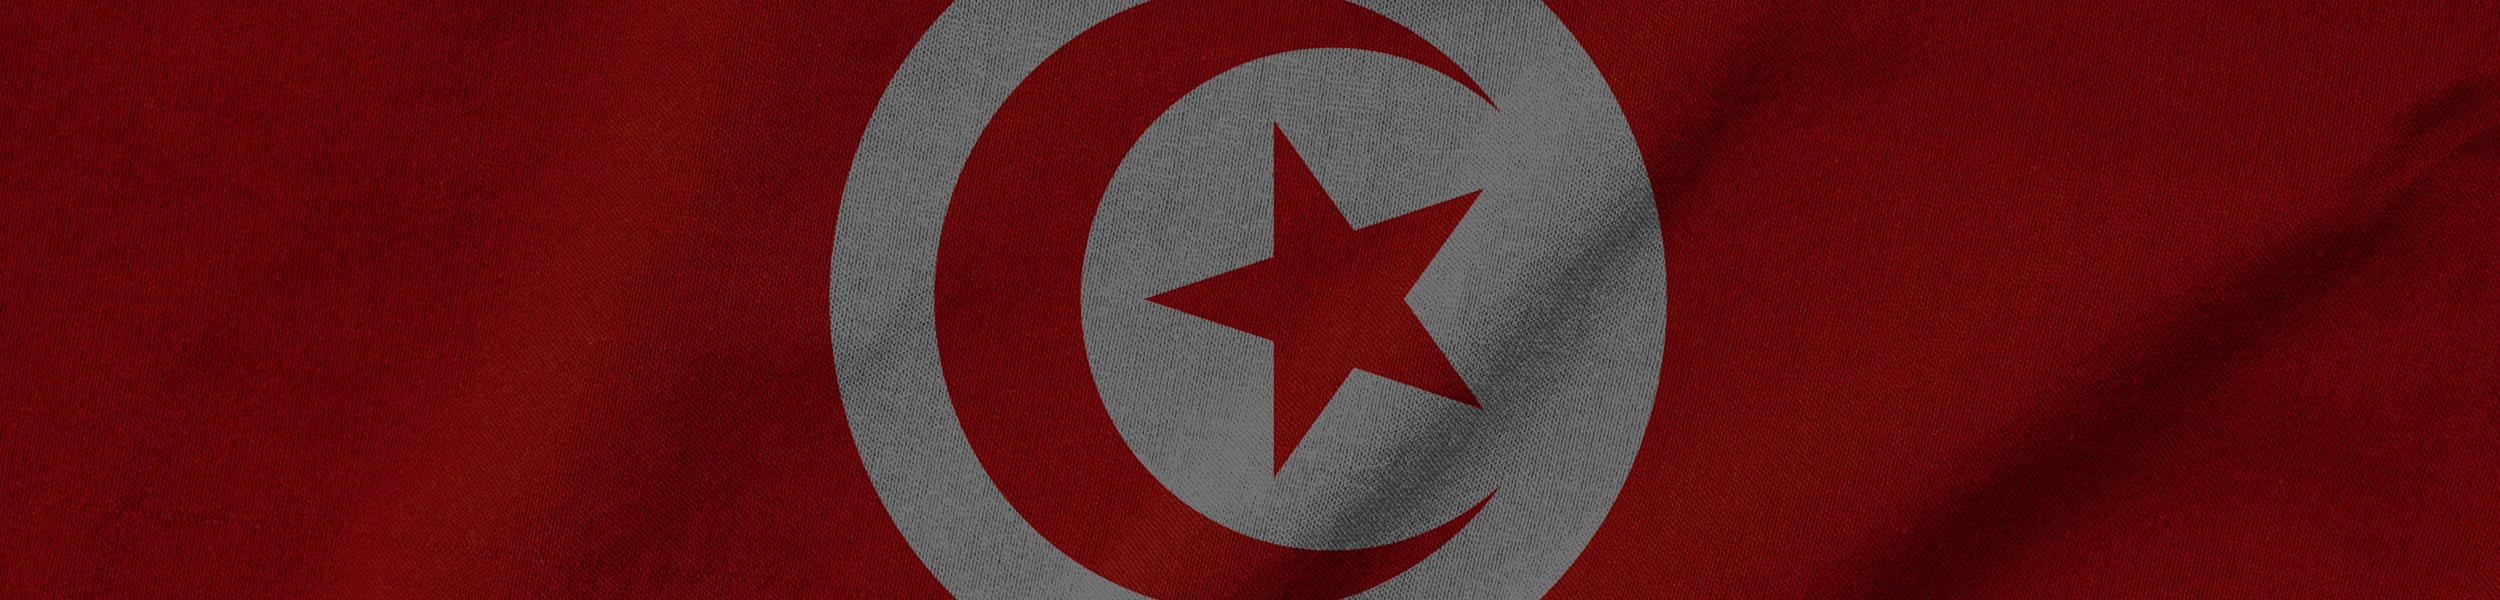 من أجل تونس حيث يمكن للجميع العيش بكرامة